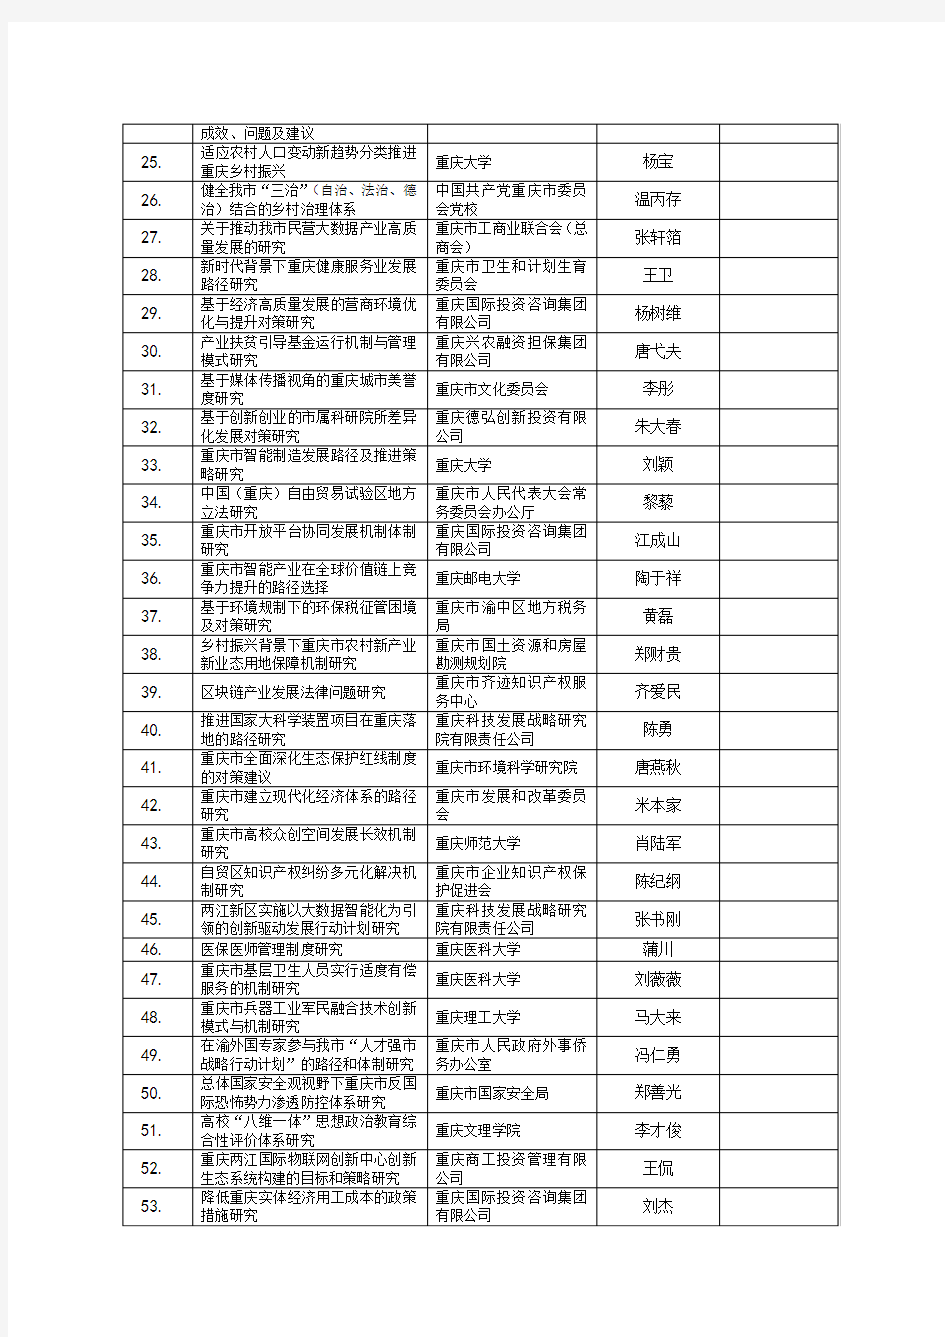 2018年重庆市技术预见与制度创新专项项目拟立项清单